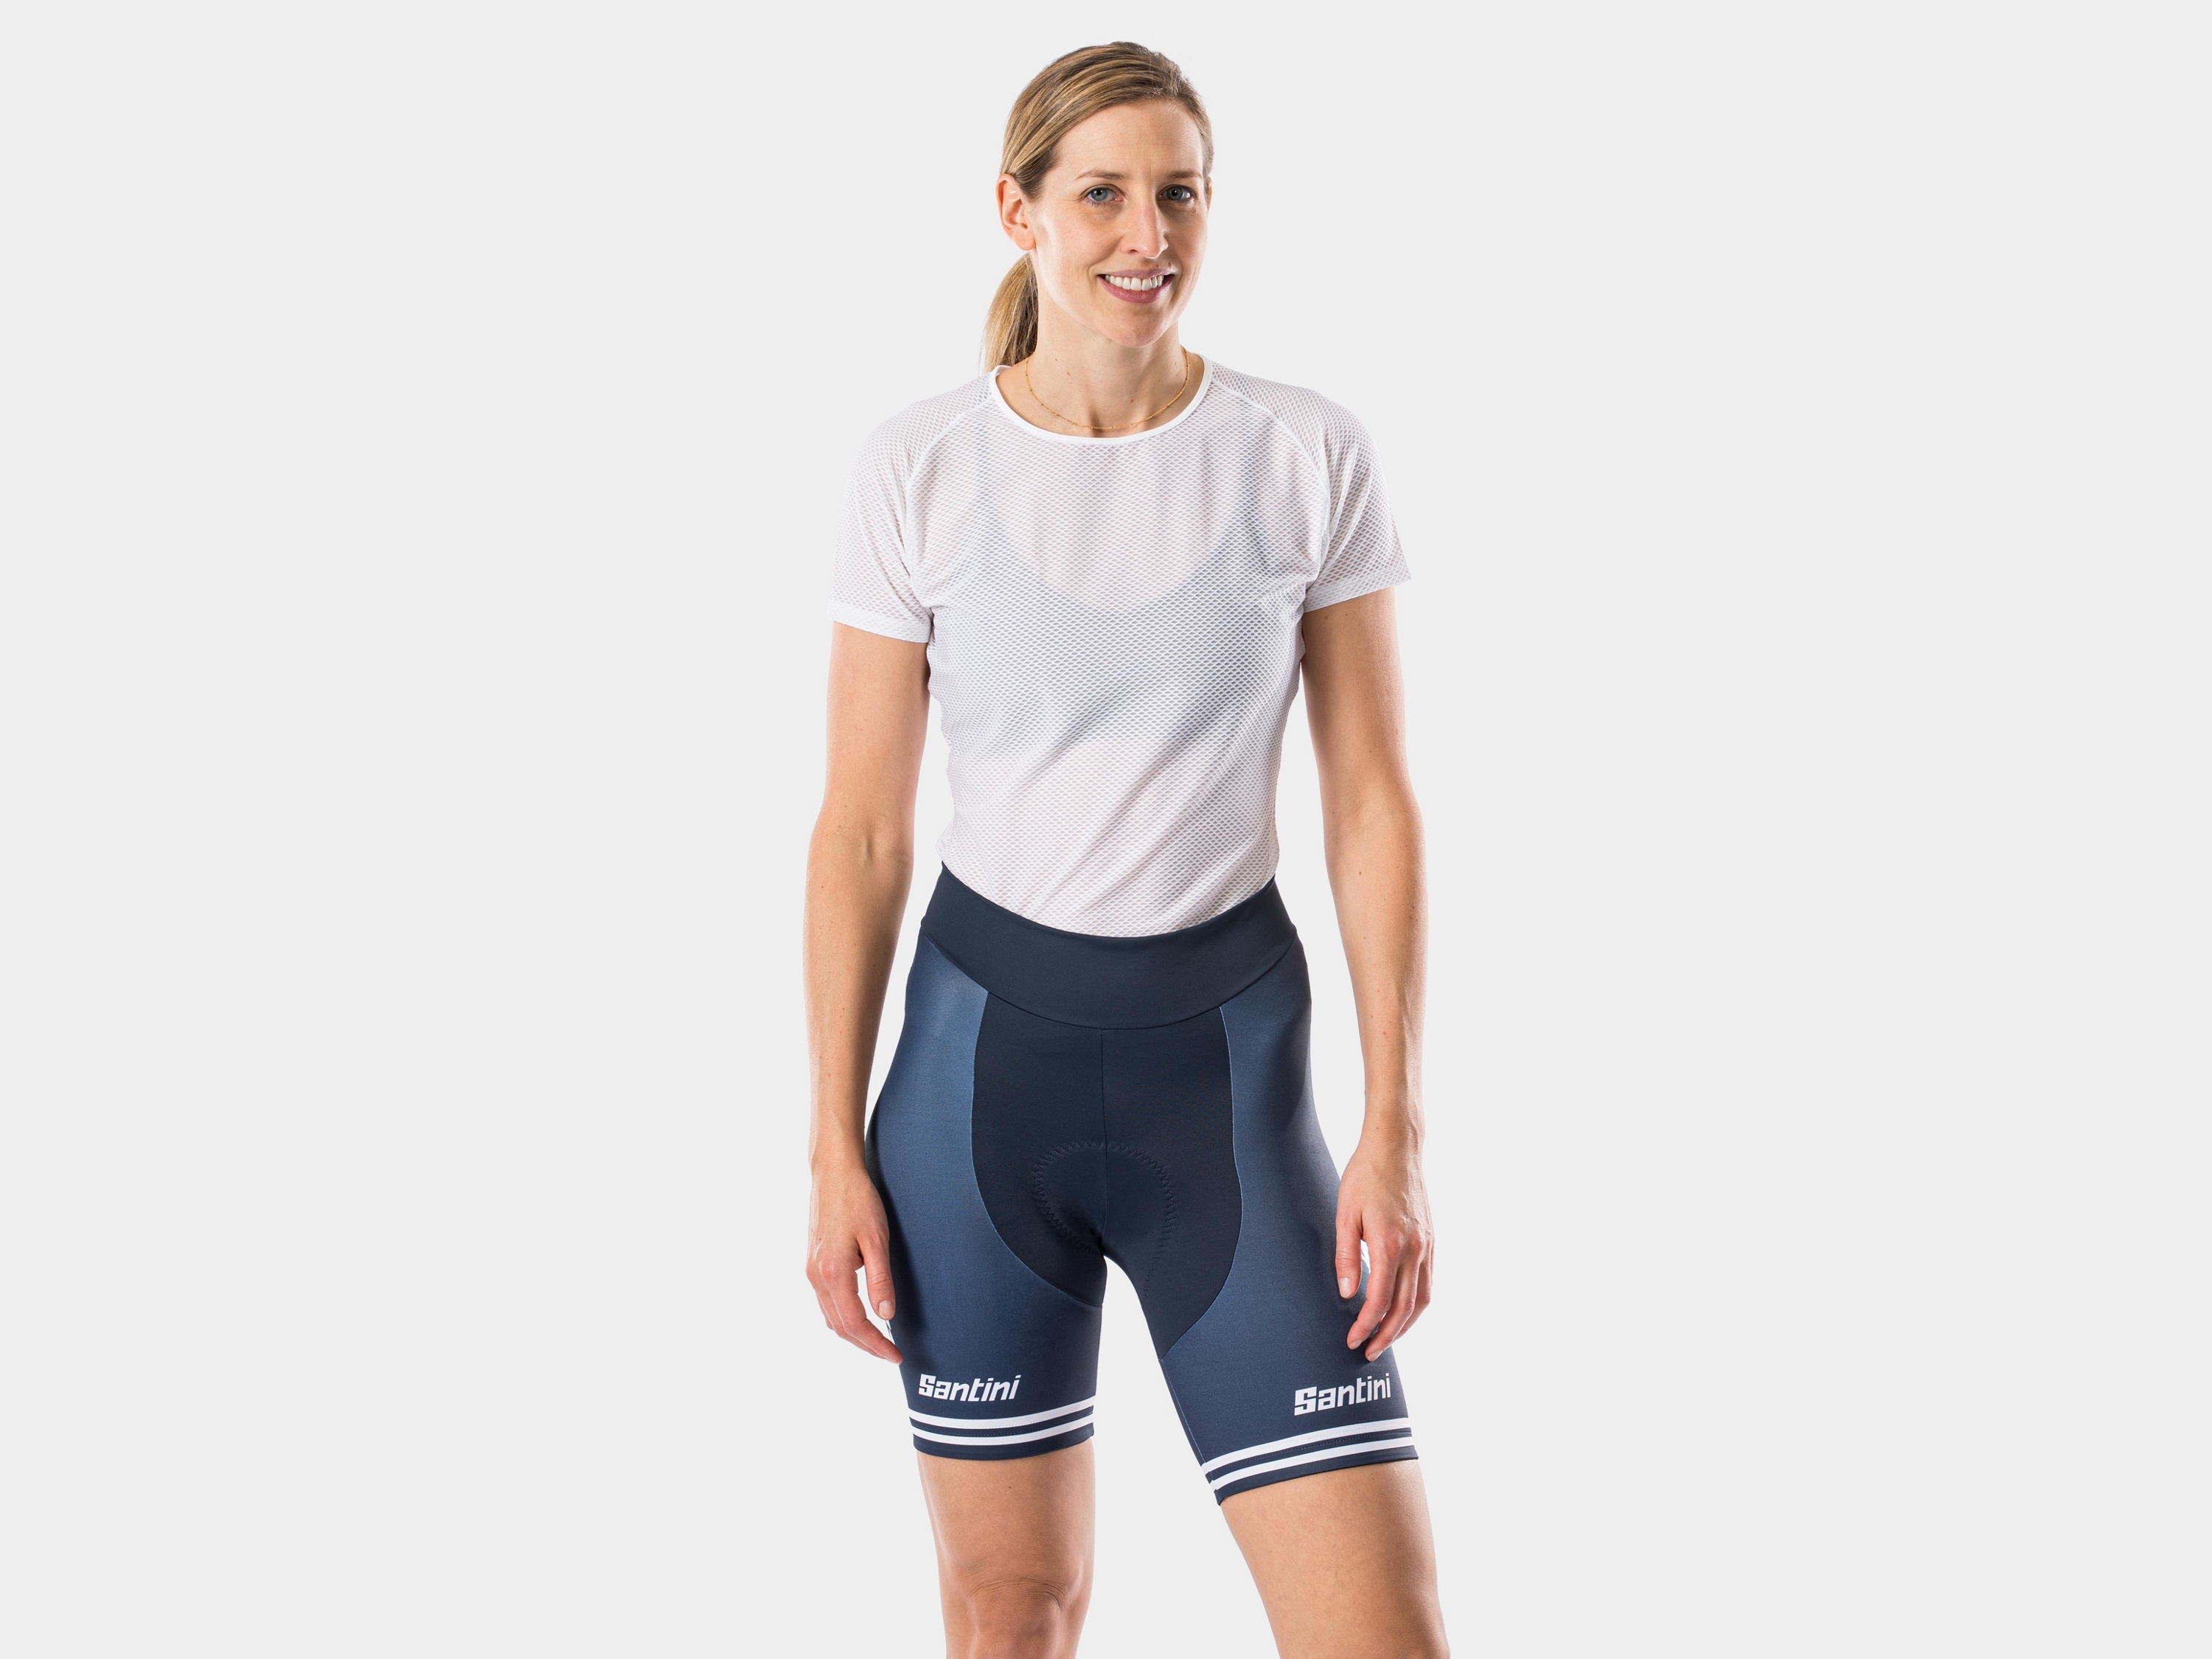 trek cycling shorts